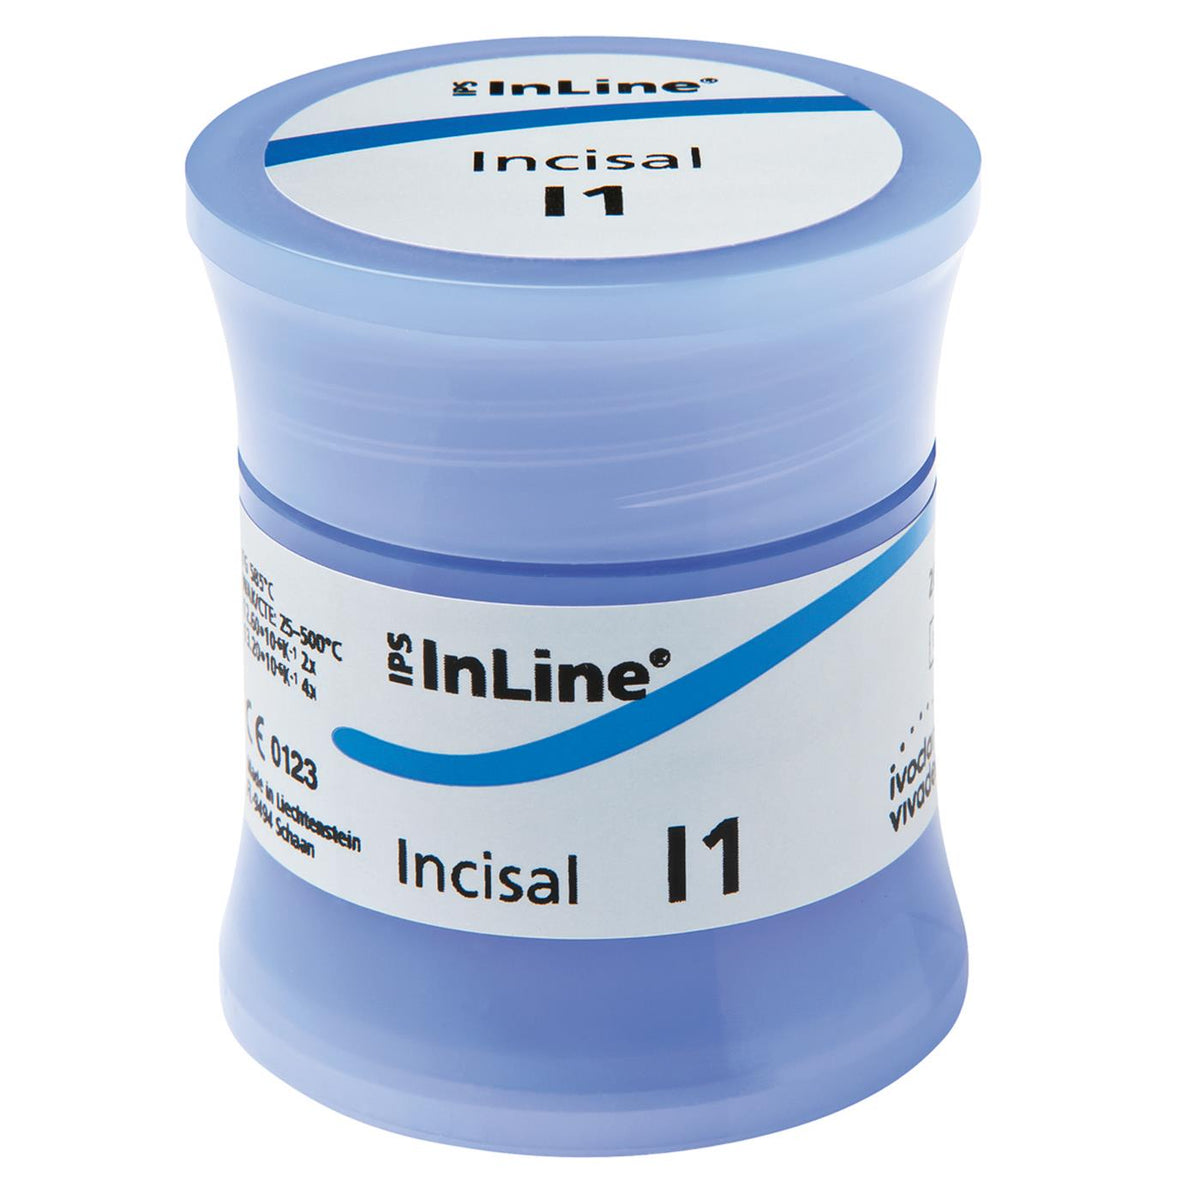 DentrealStore - Ivoclar Vivadent IPS InLine Incisal 100g